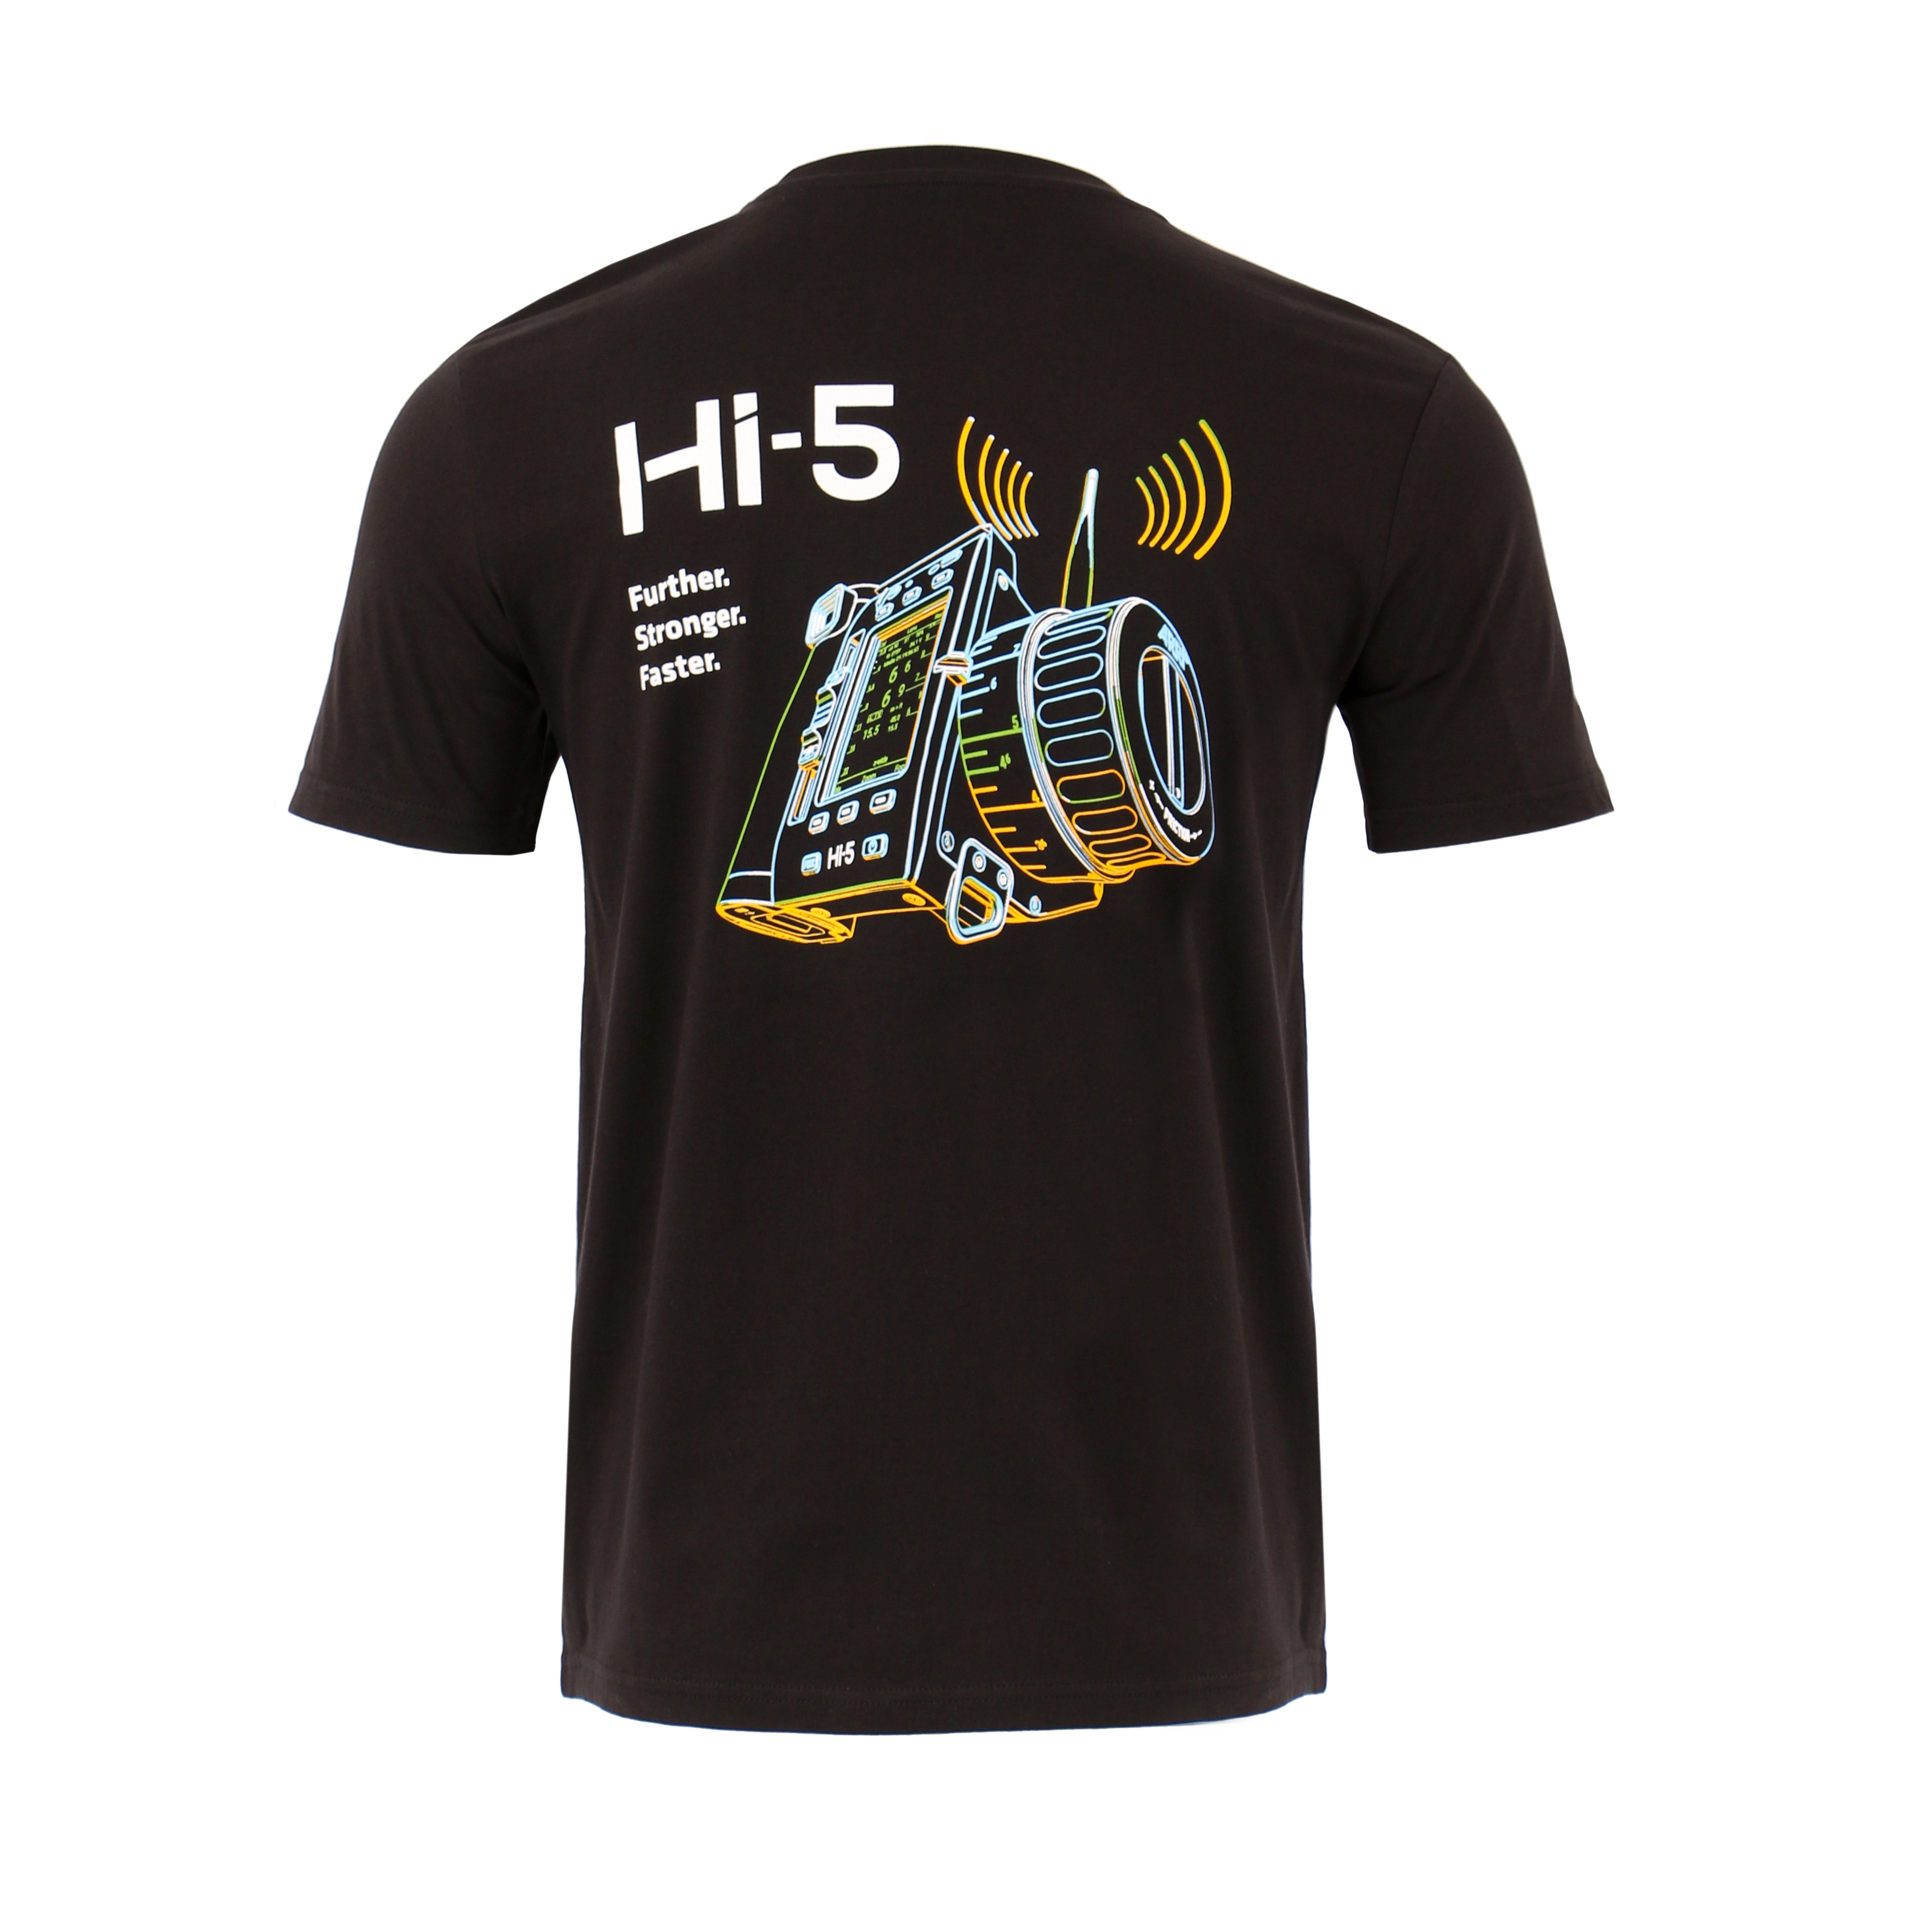 ARRI Unisex T-Shirt Hi-5